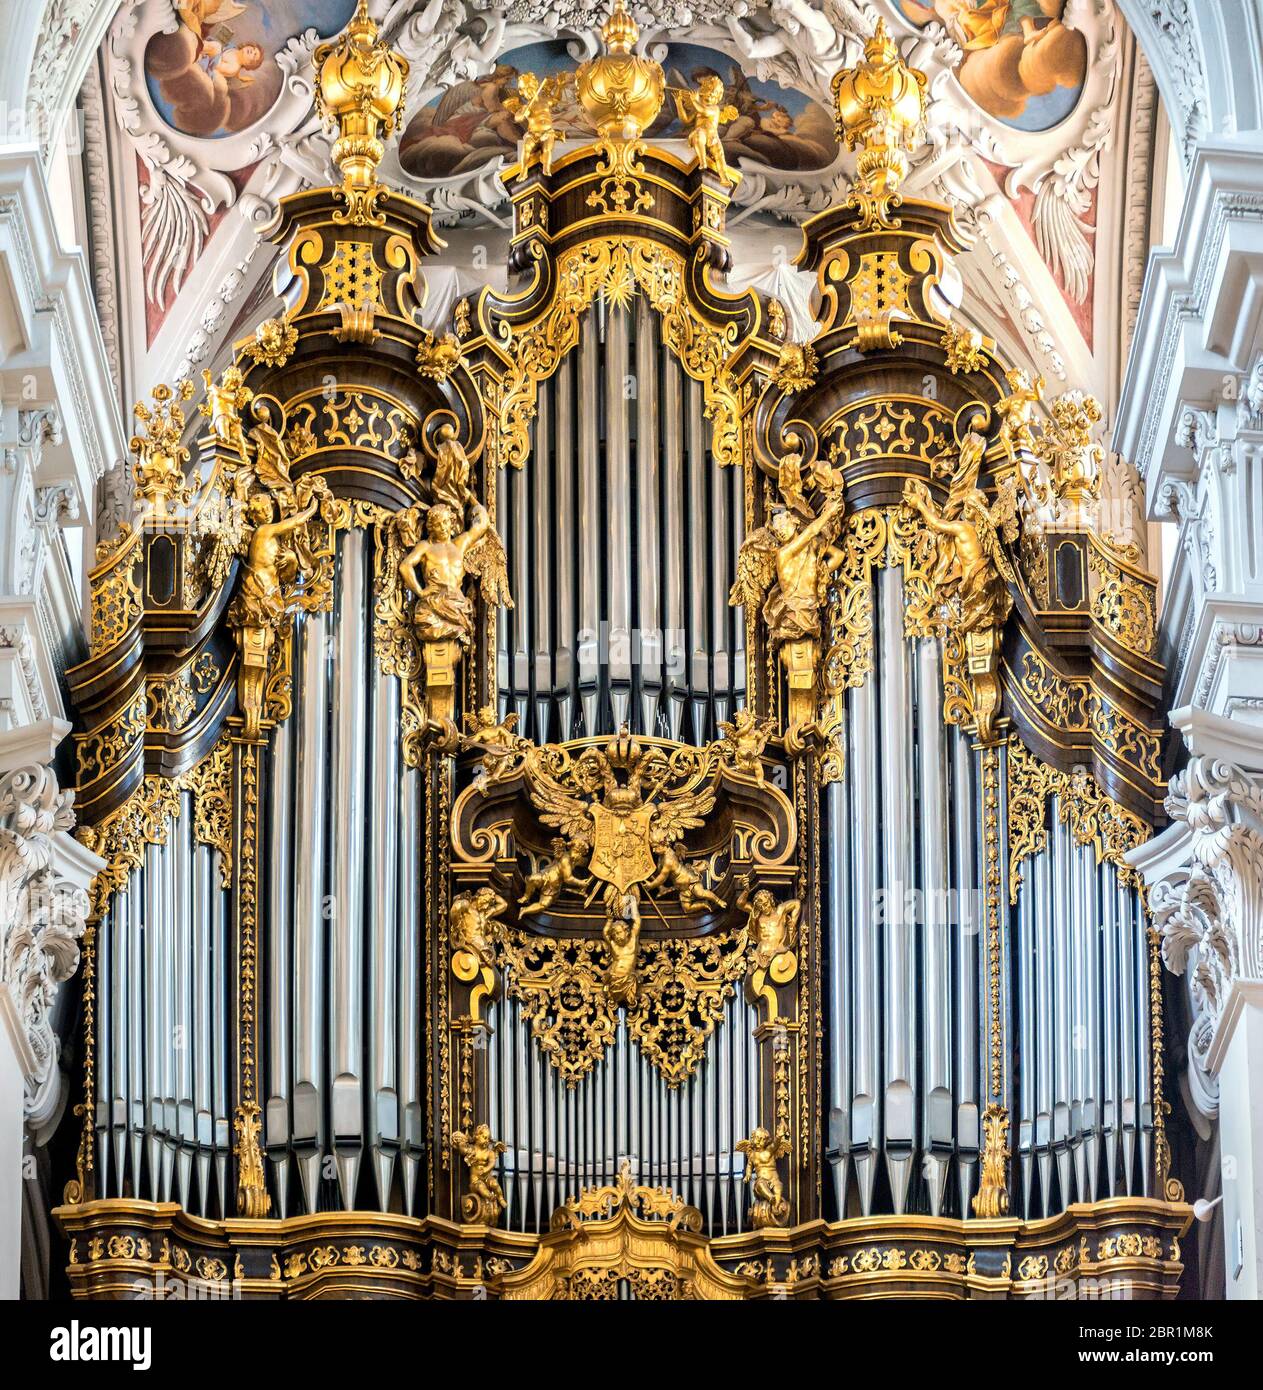 Orgel in St. Stephan's Cathedral, Passau. Es ist die größte Kathedrale Orgel  der Welt. Die Orgel hat derzeit 17,774 Pfeifen und 233 Registern  Stockfotografie - Alamy